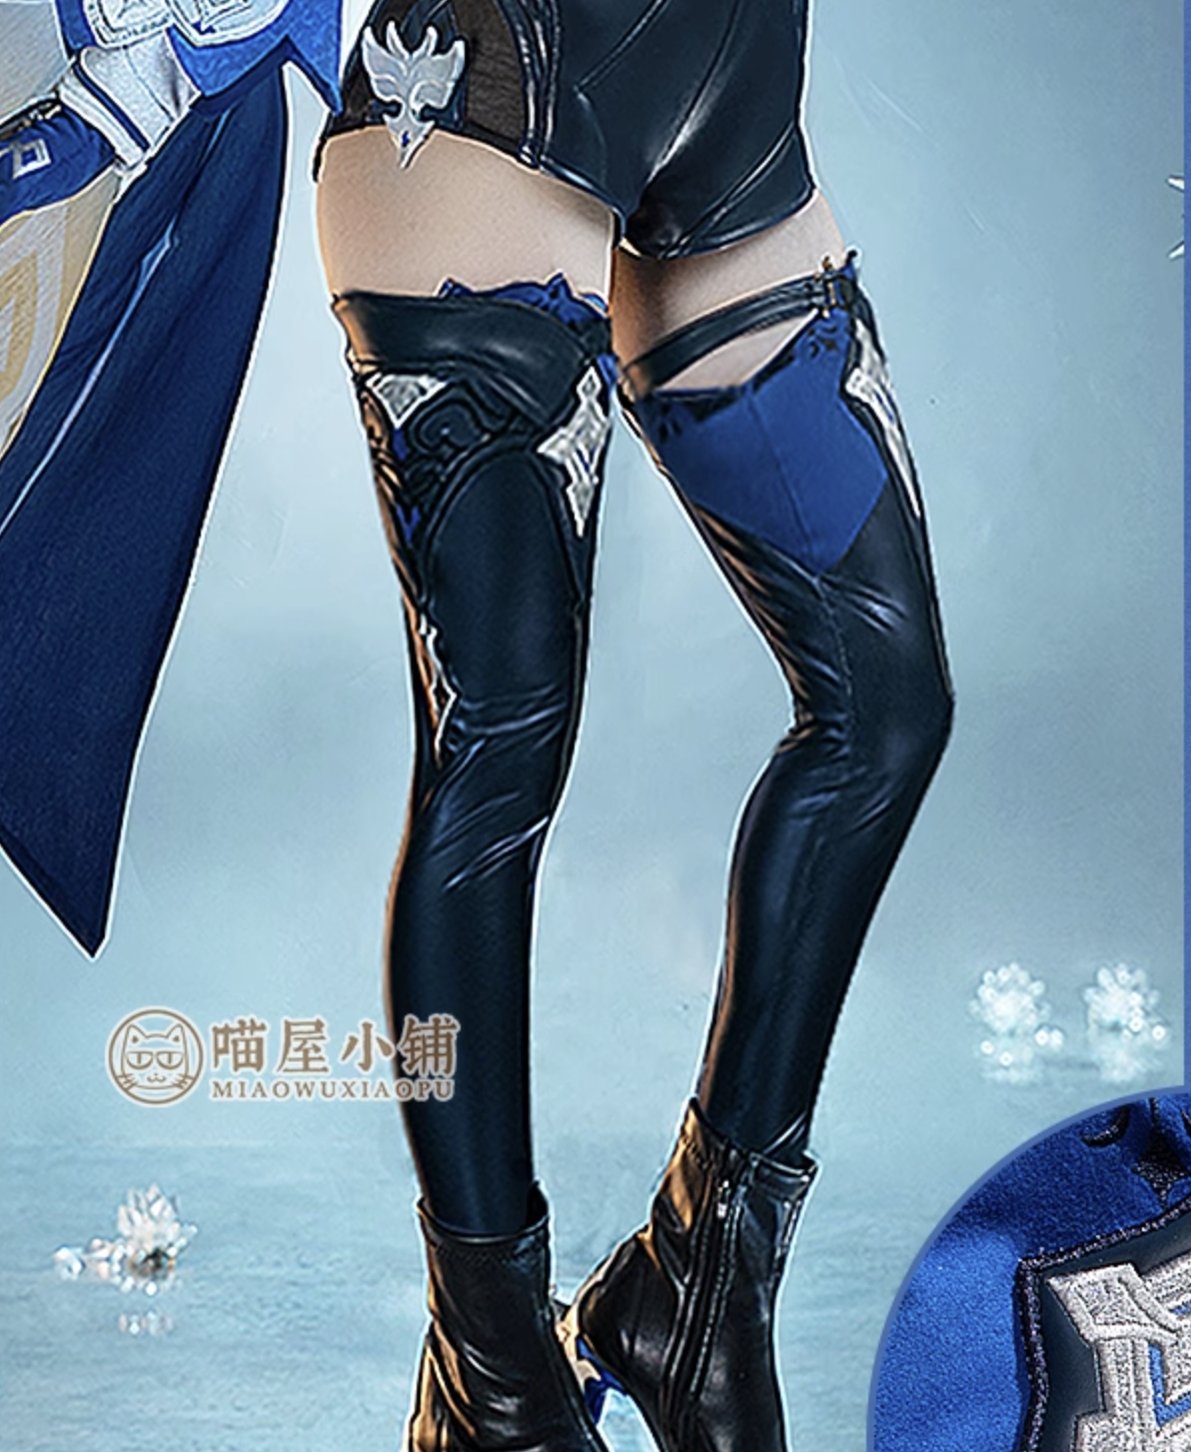 Genshin Impact Eula Cosplay Costume Anime Suit 15418:375107